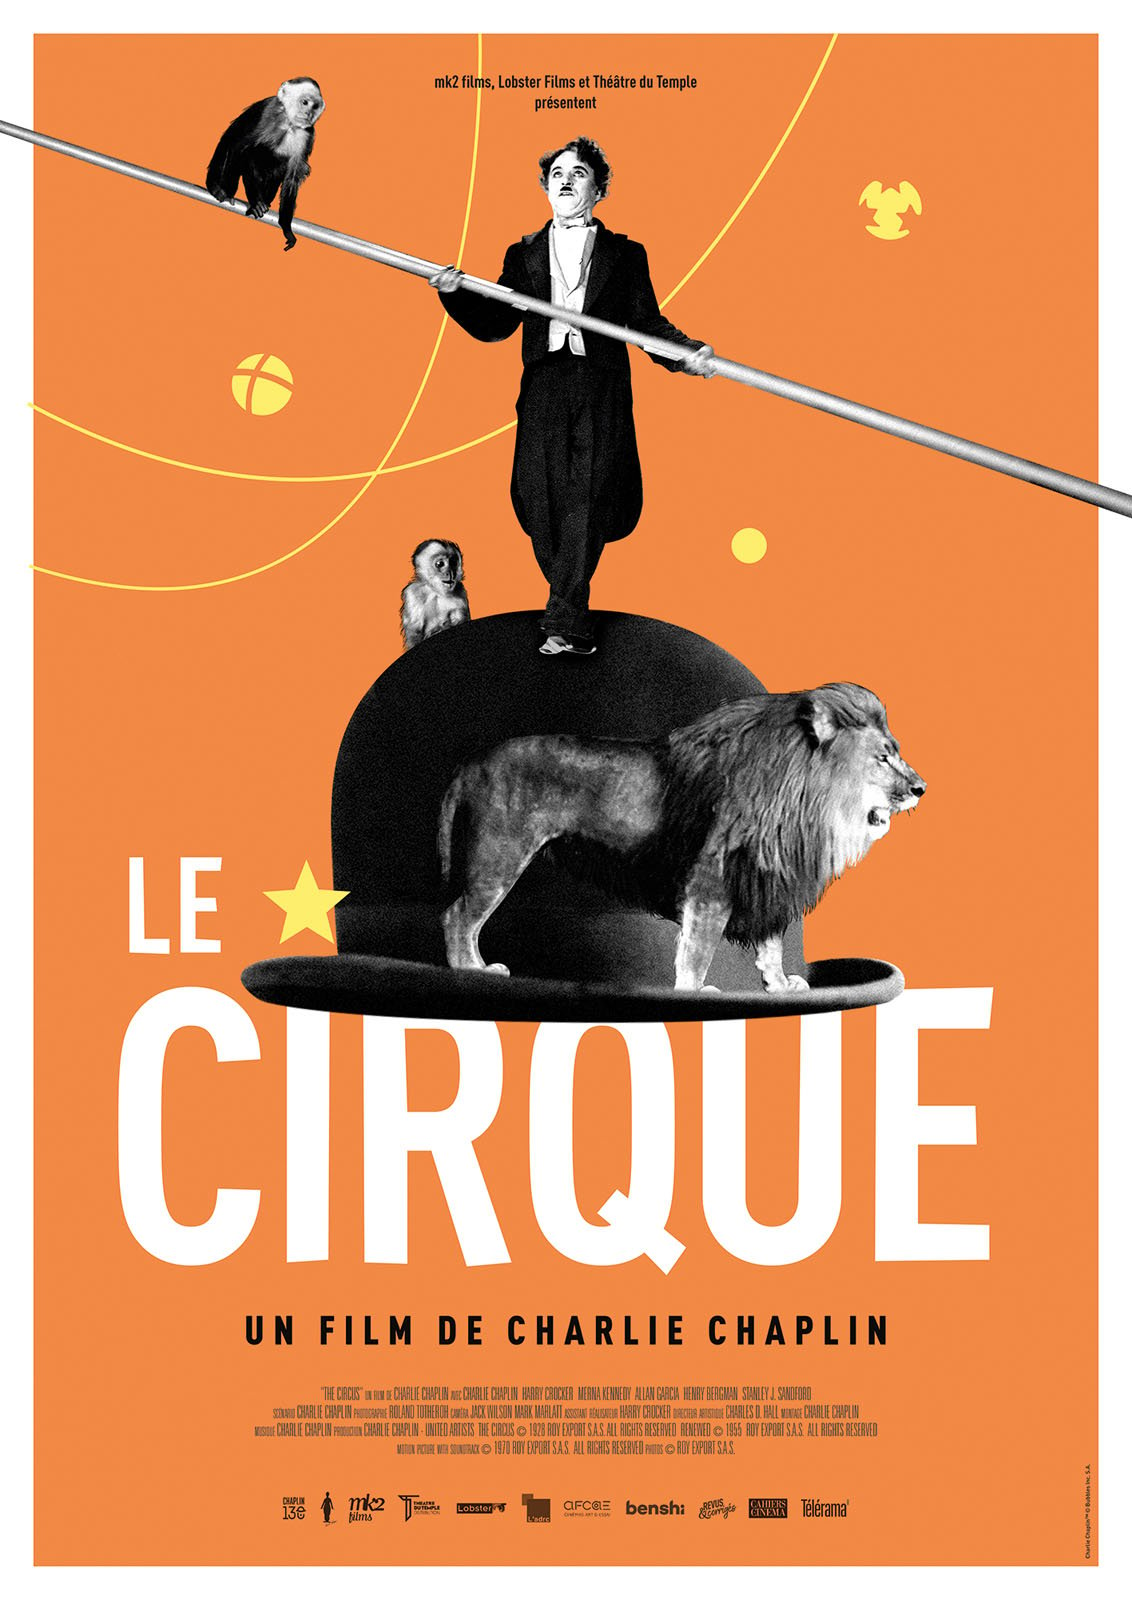 charlie chaplin le cirque